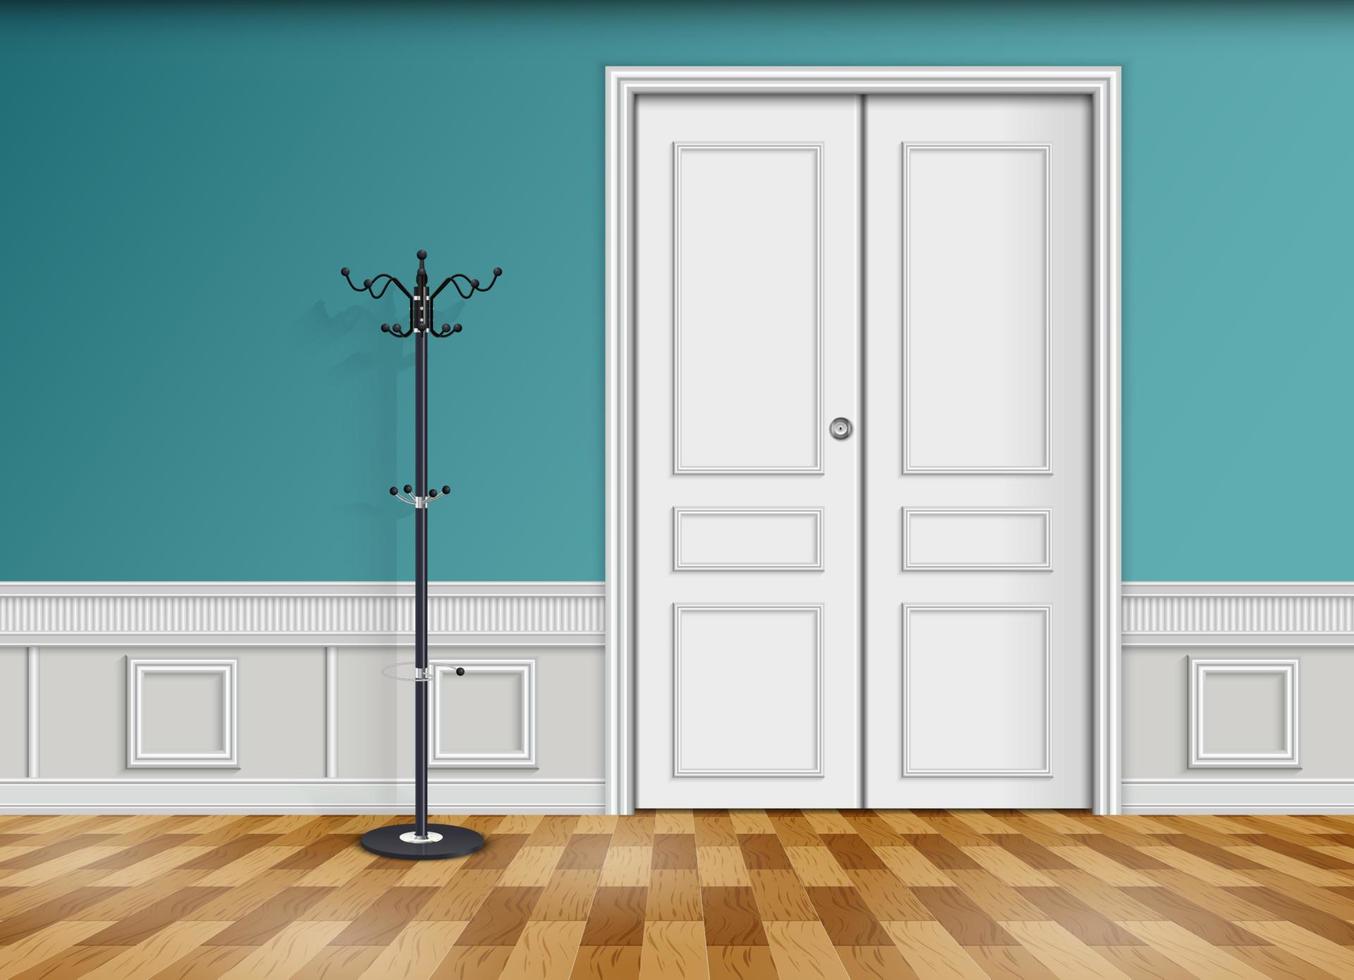 stängd vit dörr med lykta och träparkettgolv isolerad på blå väggbakgrund vektor